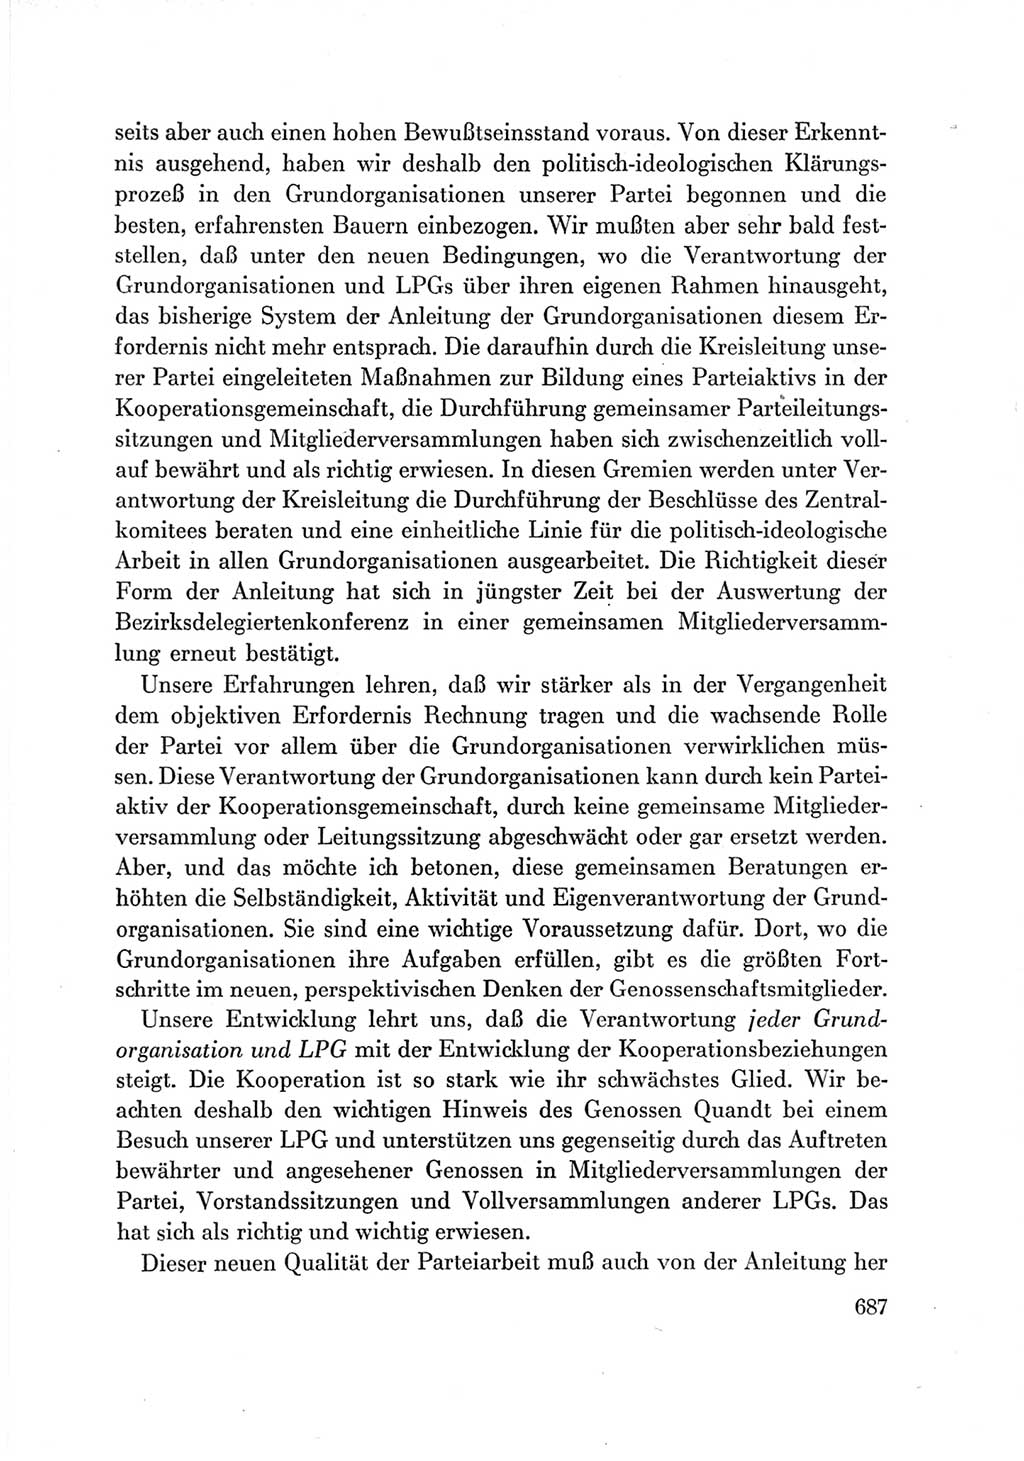 Protokoll der Verhandlungen des Ⅶ. Parteitages der Sozialistischen Einheitspartei Deutschlands (SED) [Deutsche Demokratische Republik (DDR)] 1967, Band Ⅲ, Seite 687 (Prot. Verh. Ⅶ. PT SED DDR 1967, Bd. Ⅲ, S. 687)